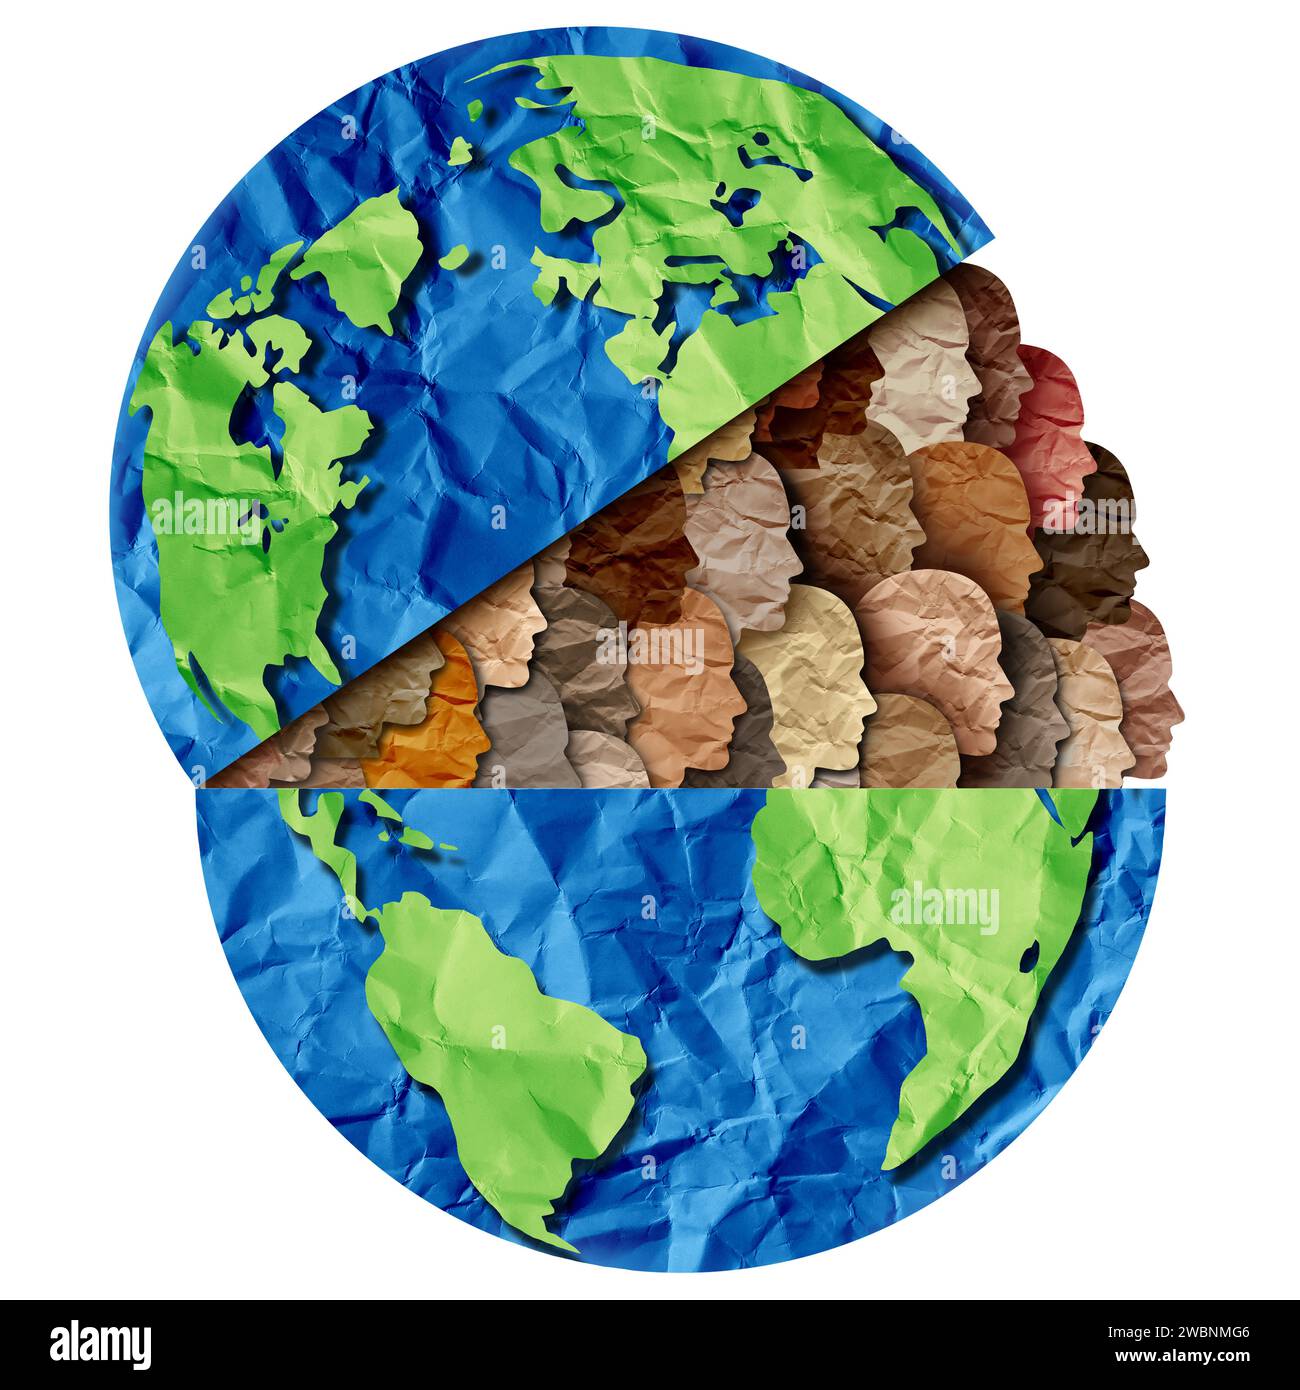 Planet Earth Diversity und Earth Day Diversity und kulturelle Feiern als vielfältige globale Kulturen und multikulturelle Einheit. Stockfoto